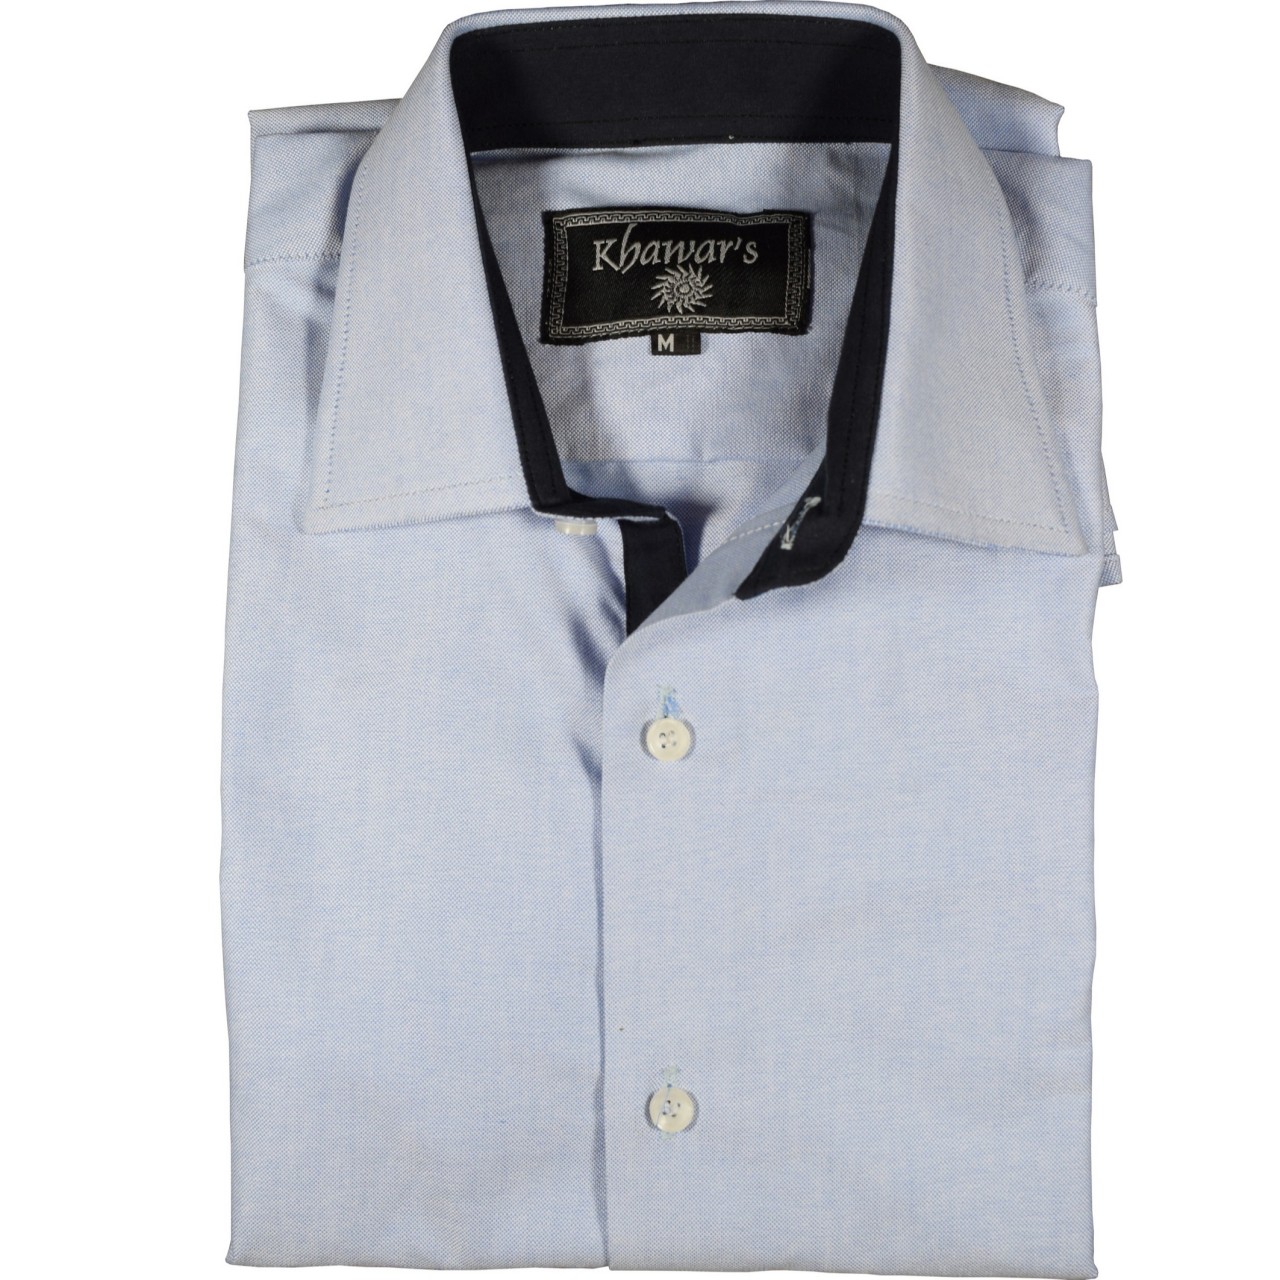 Slim Fitting Shirt for Men in Sky Blue & Plain Black Cotton